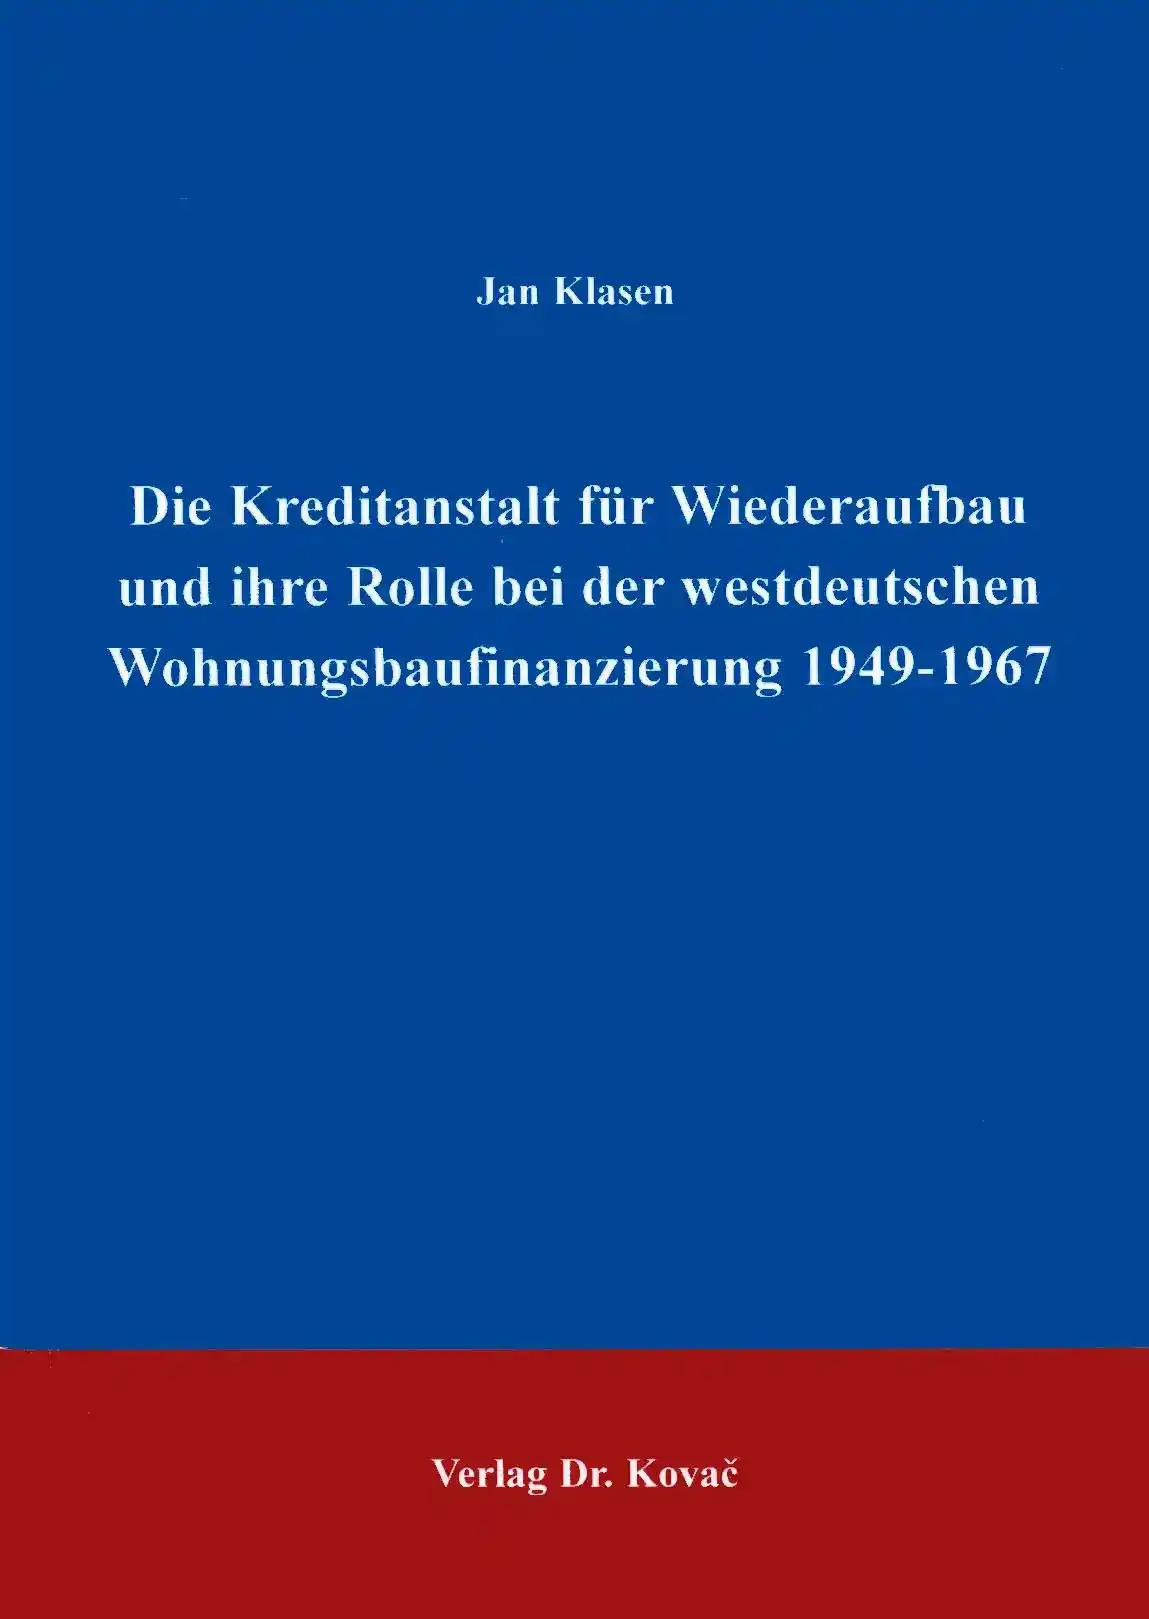 Die Kreditanstalt fÃ¼r Wiederaufbau und ihre Rolle in der westdeutschen Wohnungsbaufinanzierung 1949-1967, - Jan Klasen